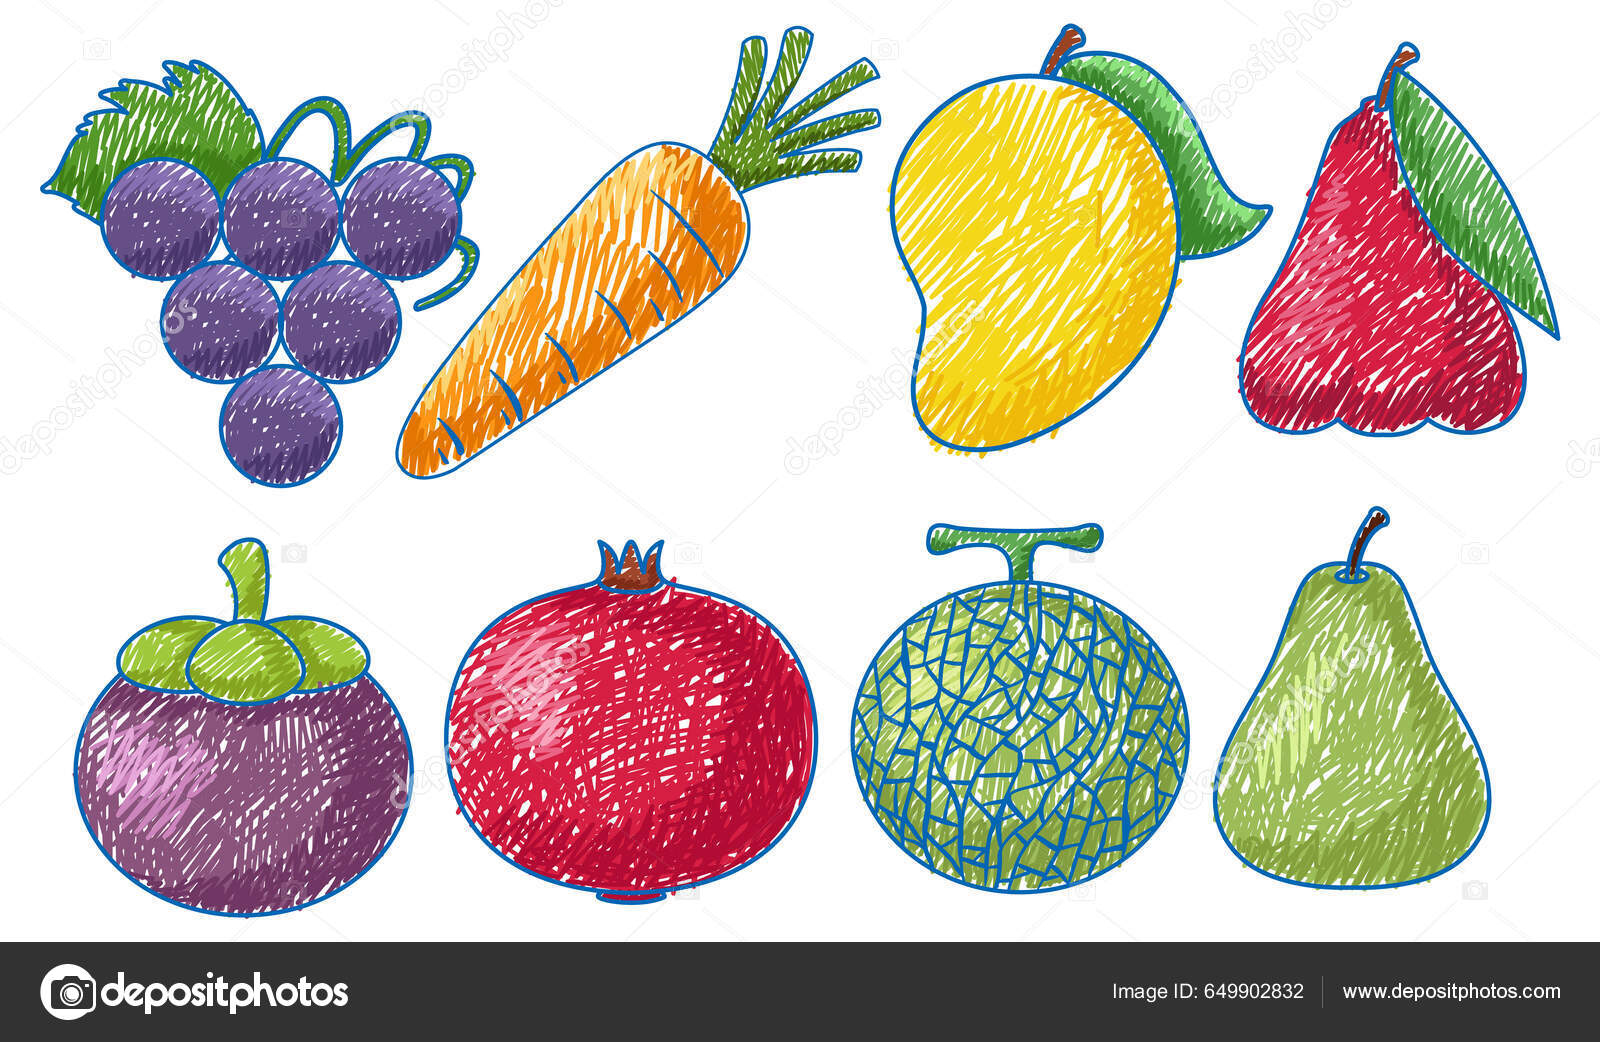 Padrão de legumes e frutas em um estilo simples de desenho animado